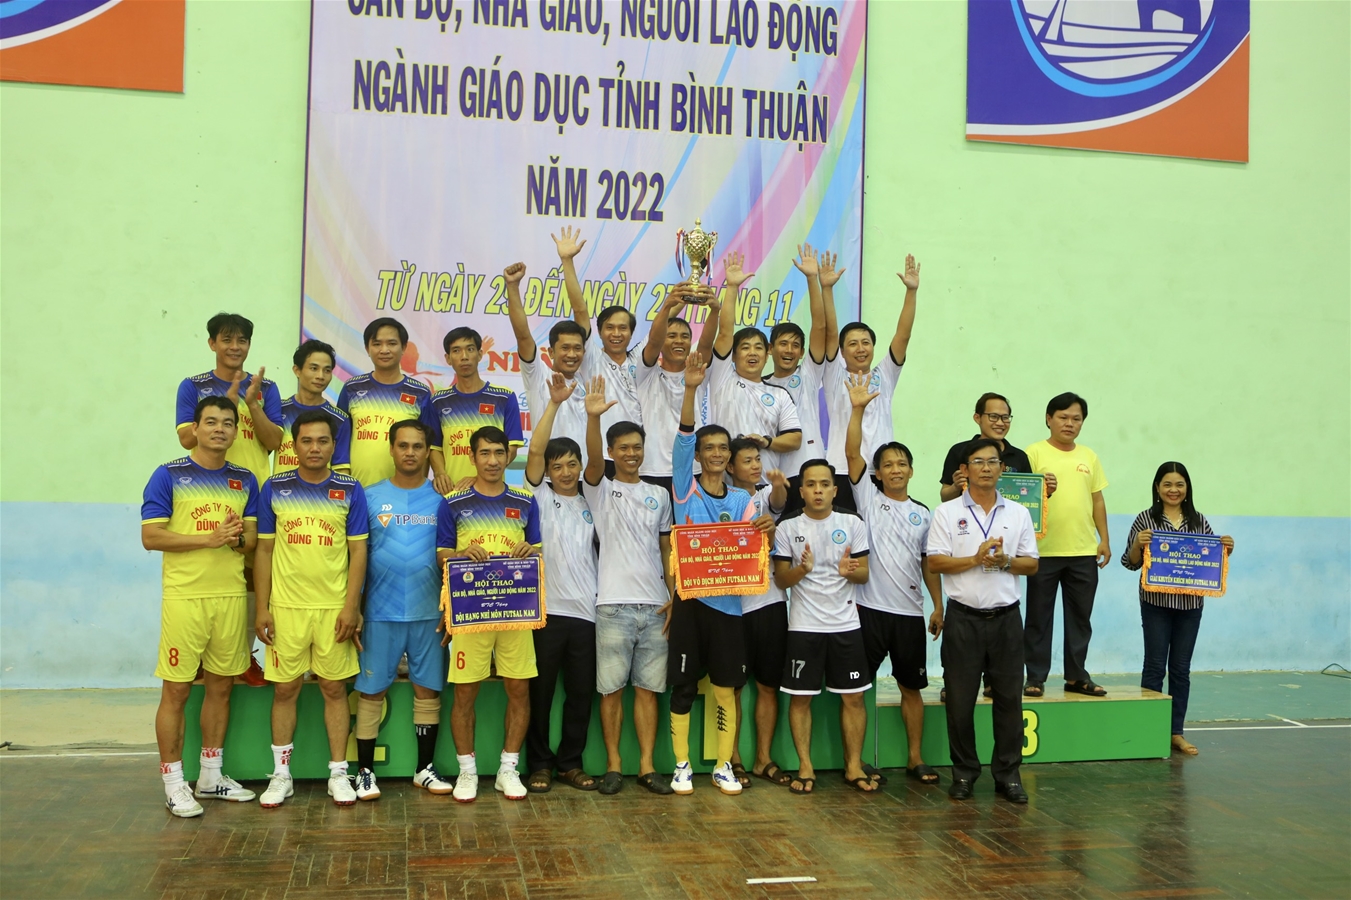 Description: D:\sogiaoduc\ANH CHUP\HINH HOI THAO 2022\VIET TIN BE MAC HOI THAO 2022\2.Các đội nhận giải môn bóng đá Futsal nam..jpg